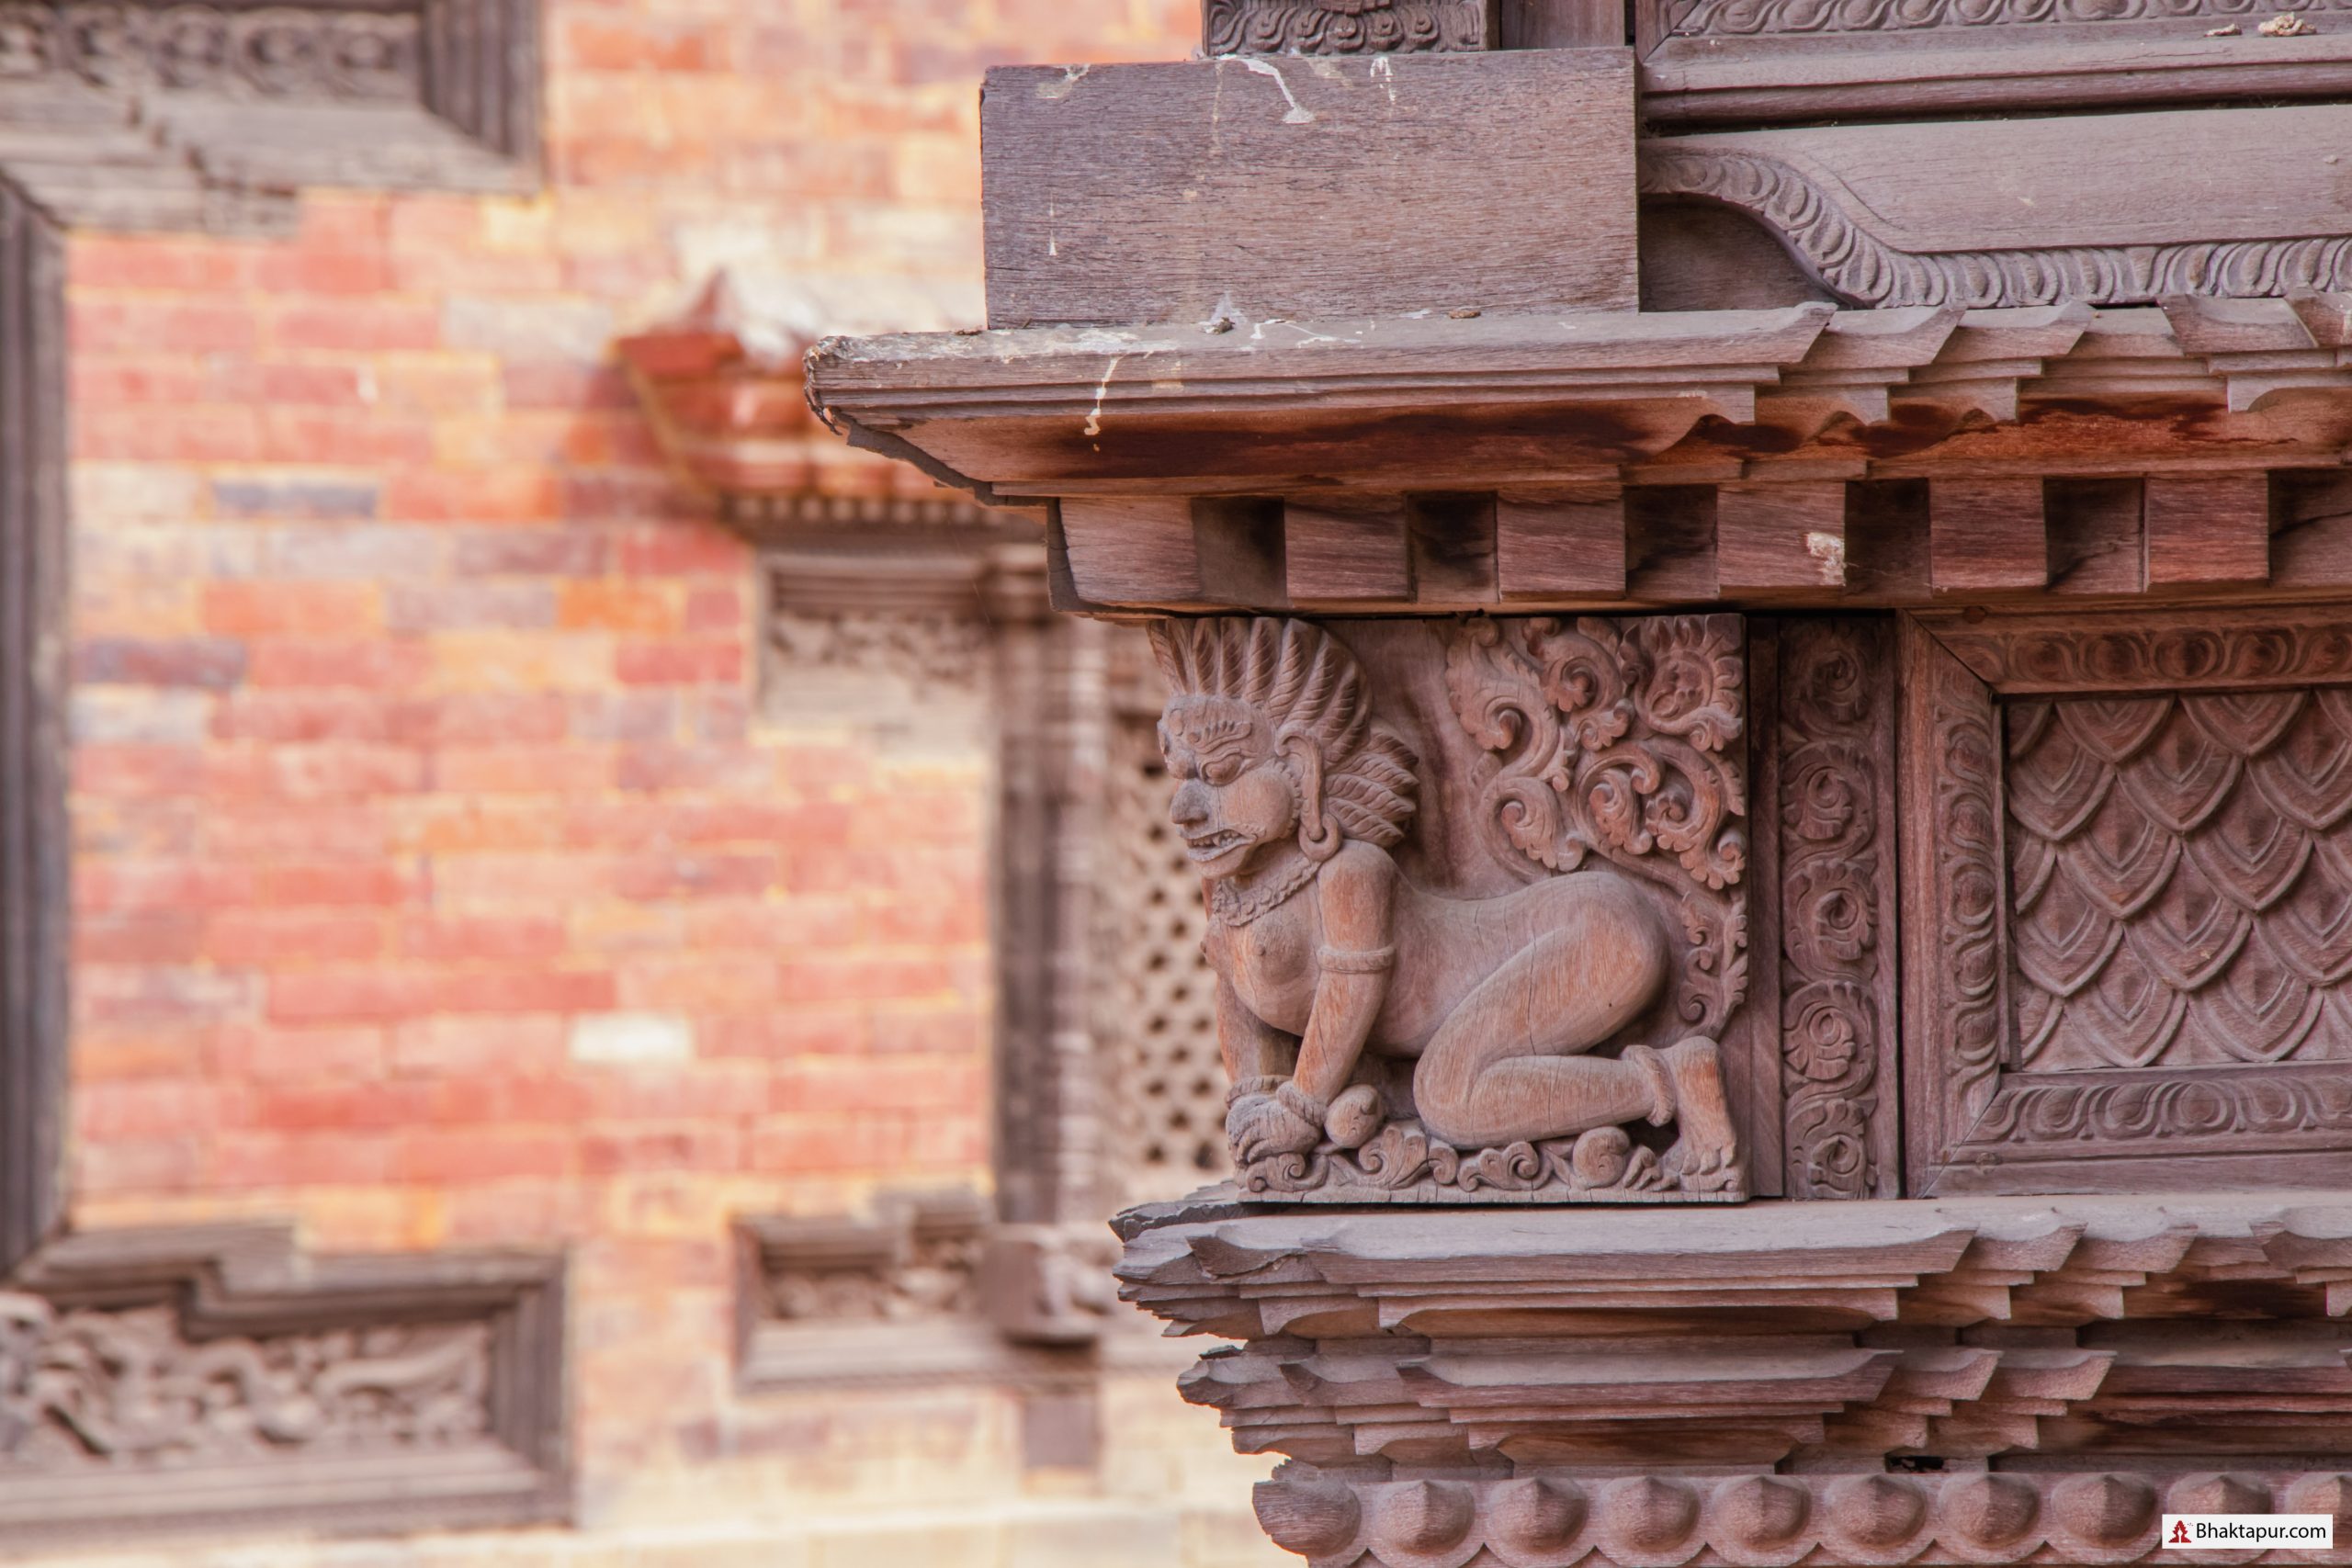 Carvings at Chyasalin Mandap of Bhaktapur image